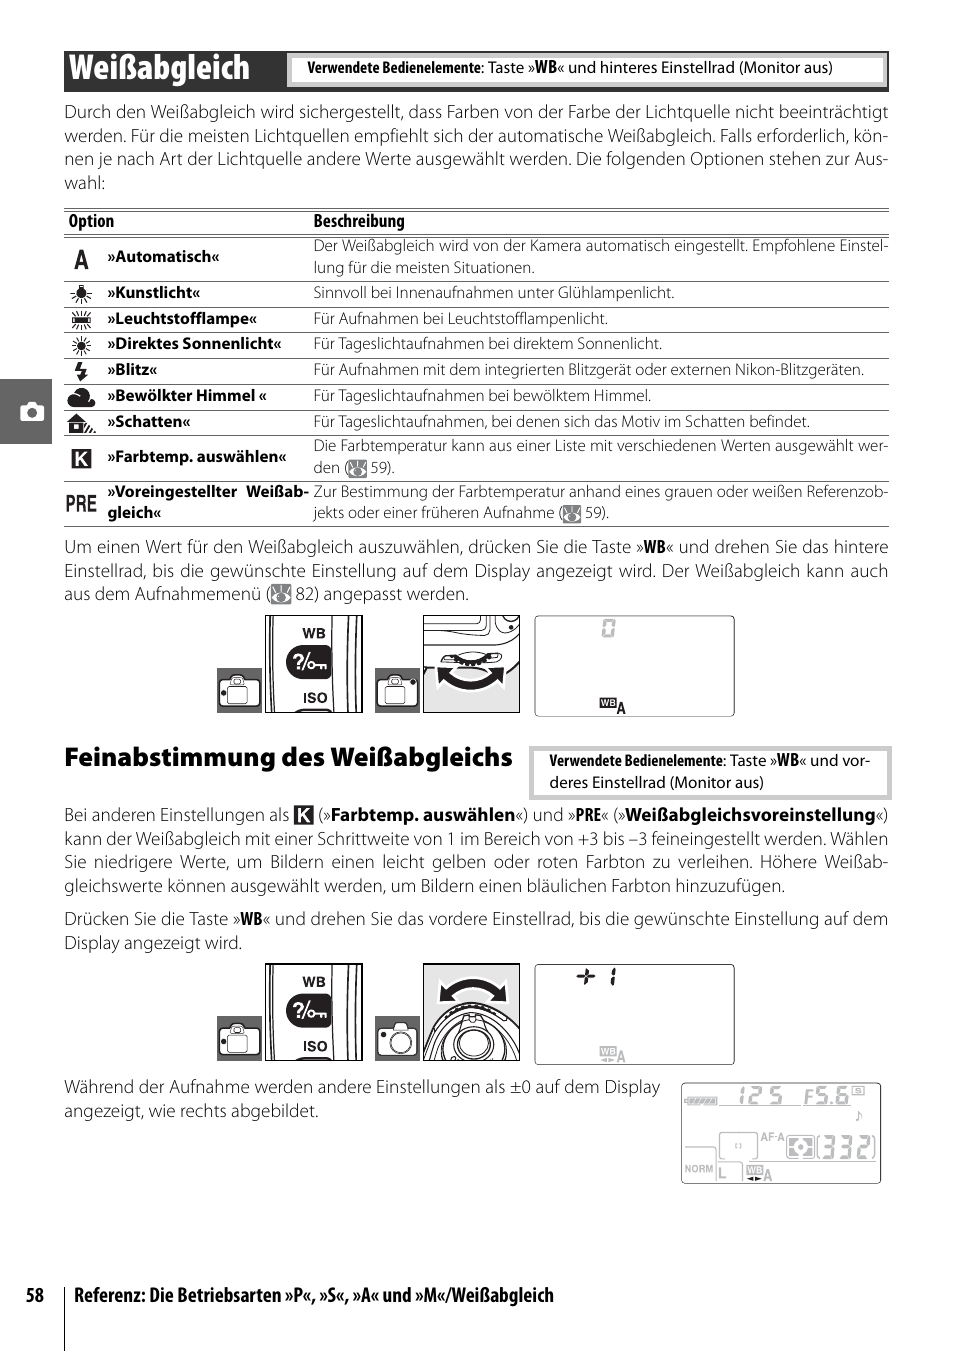 Weißabgleich, Feinabstimmung des weißabgleichs | Nikon D80 Benutzerhandbuch | Seite 70 / 162